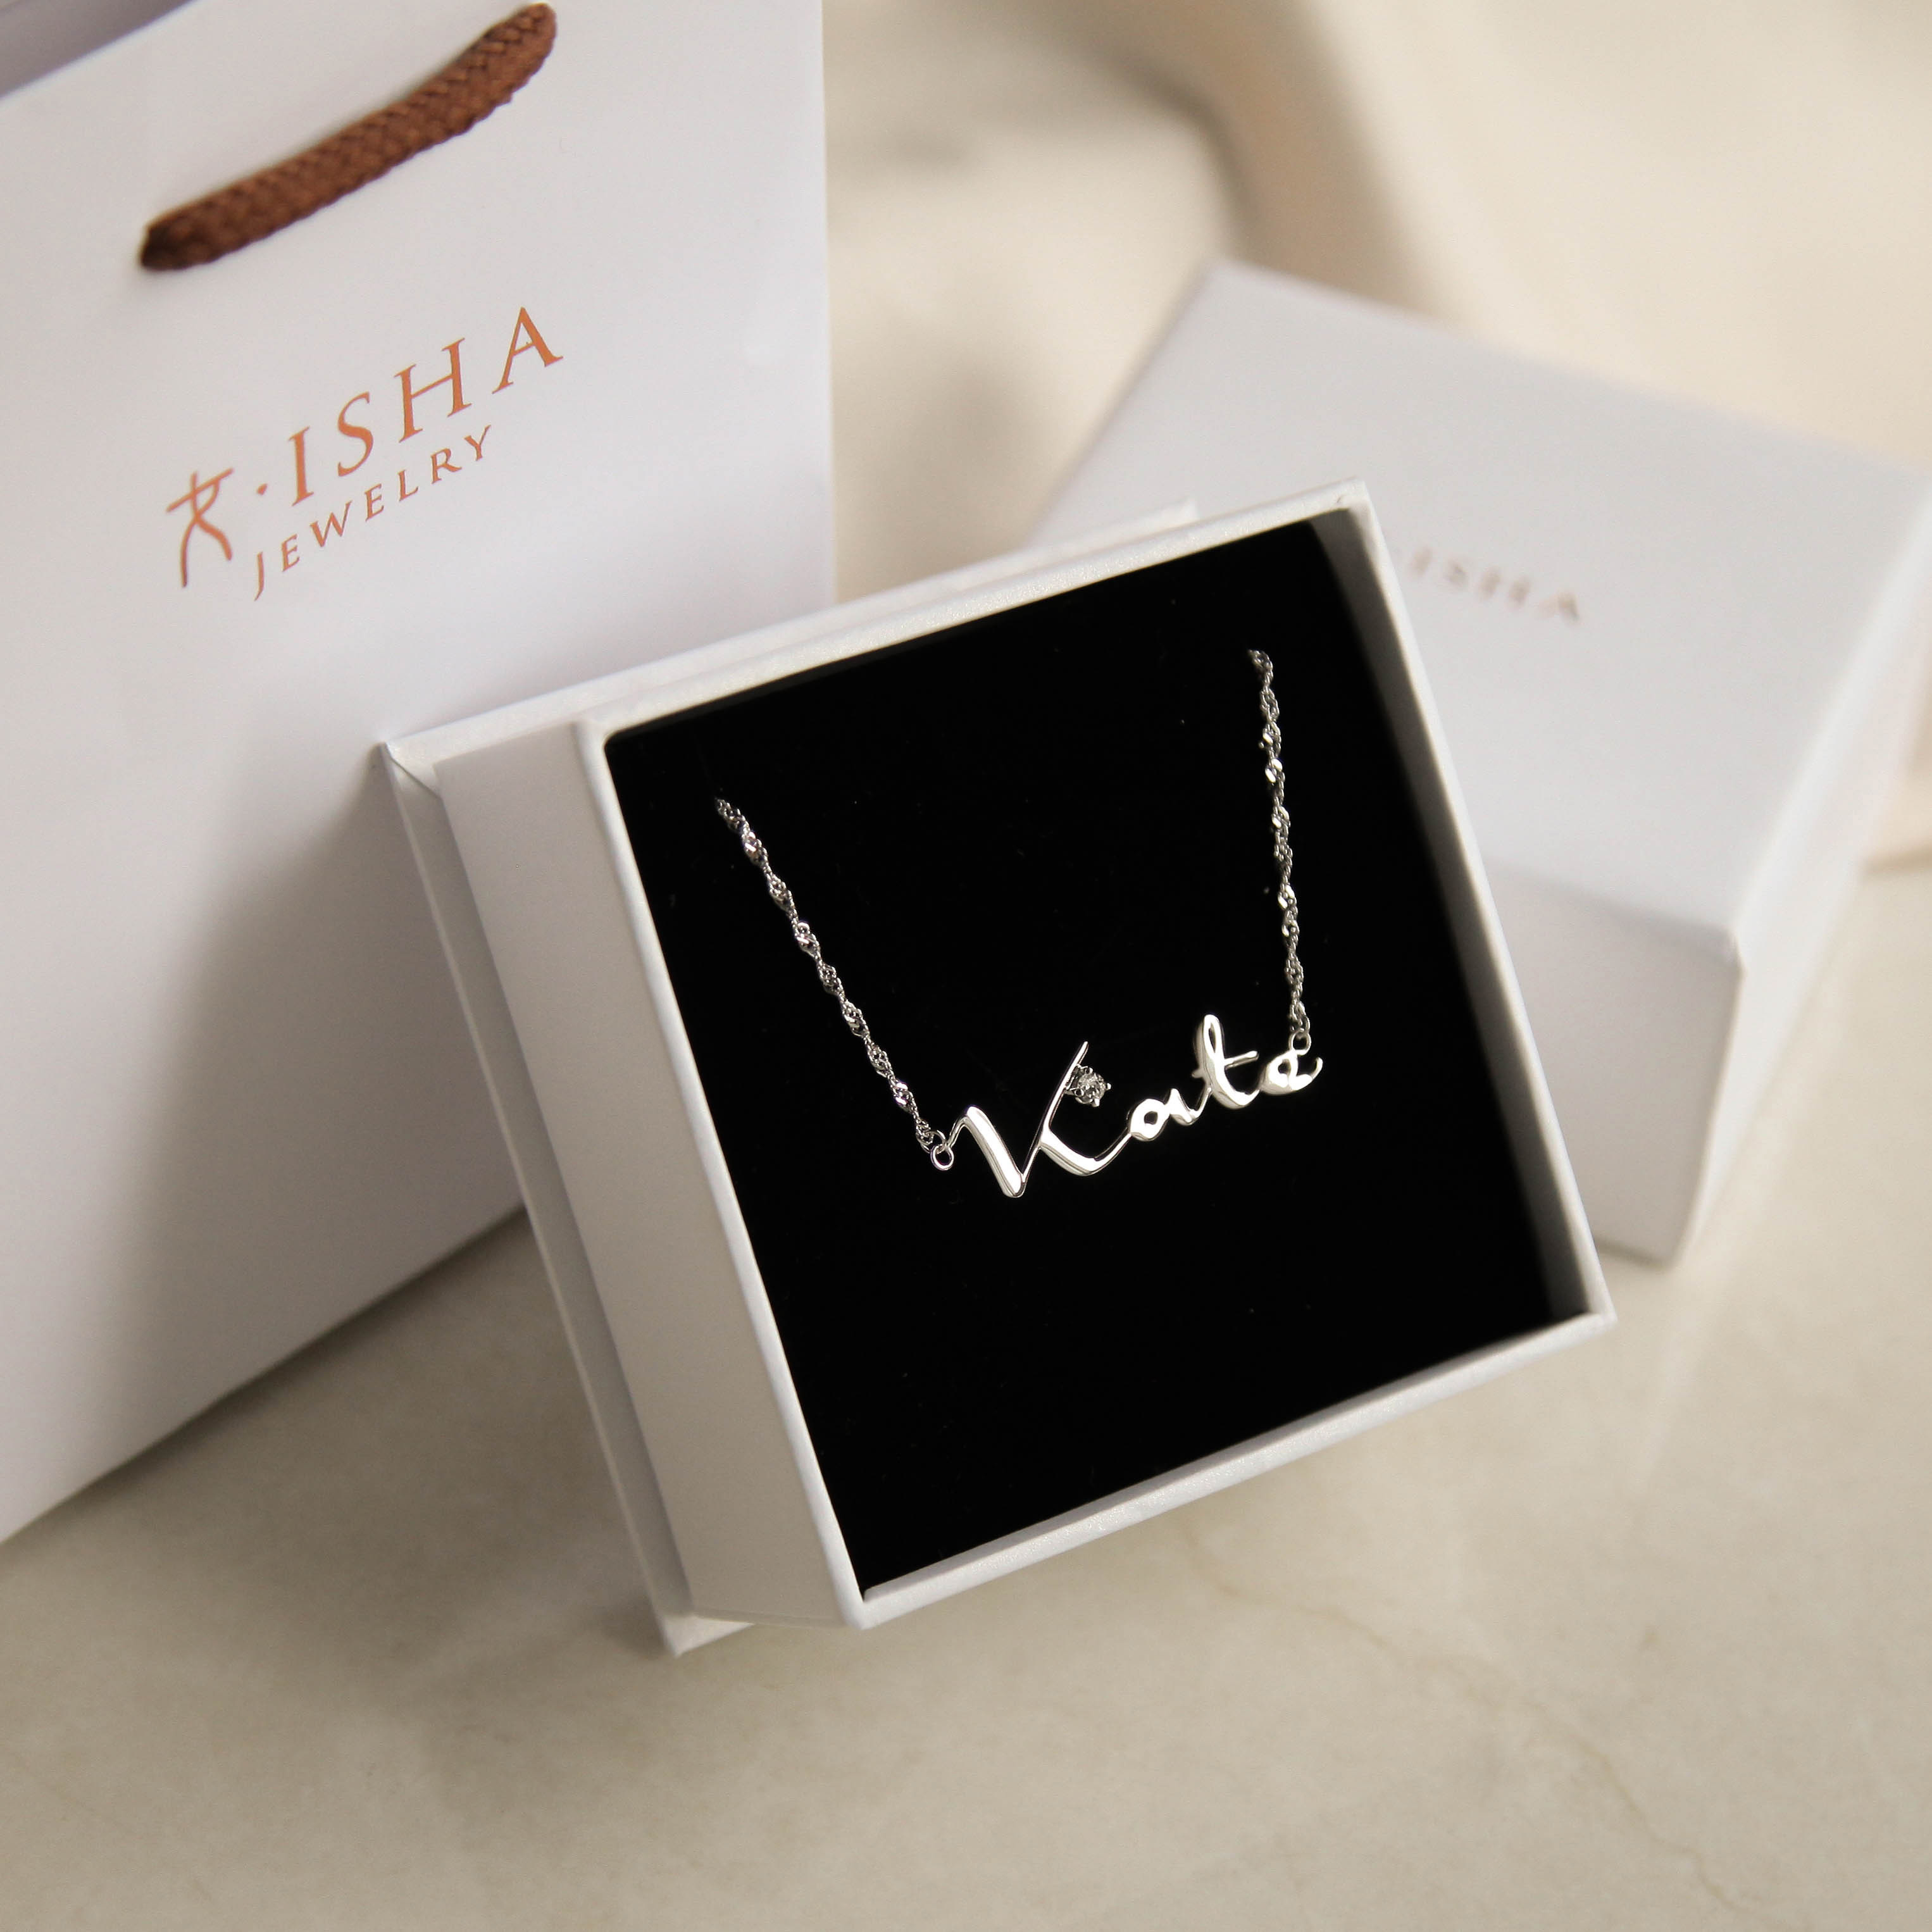 客製化系列】英文姓名純銀項鍊(標準尺寸) | Isha Jewelry。專屬禮物